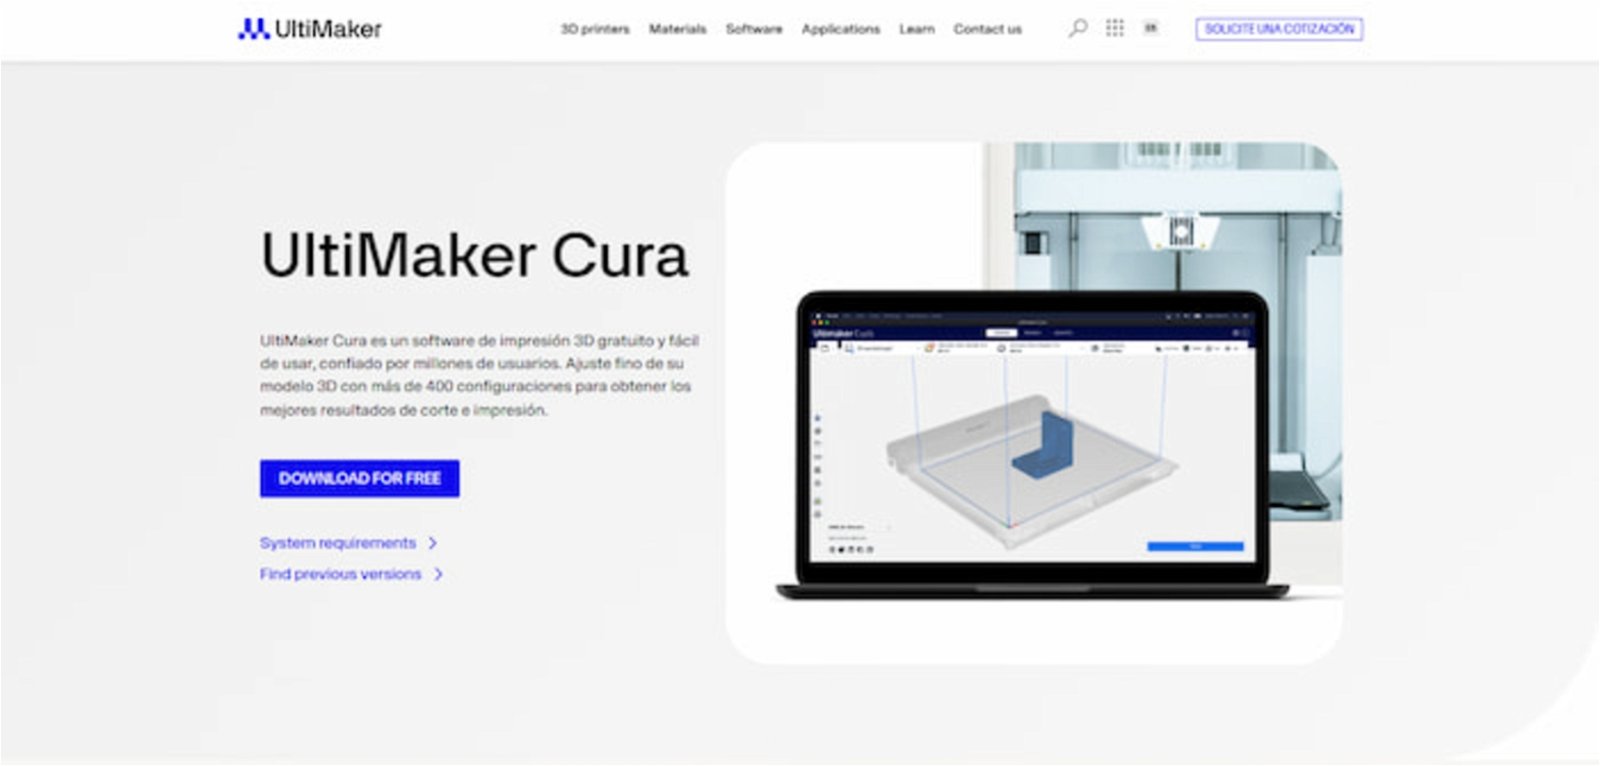 Cura es la herramienta de UltiMaker diseñada para gestionar todo el proceso de corte 3D y, posteriormente, de impresión